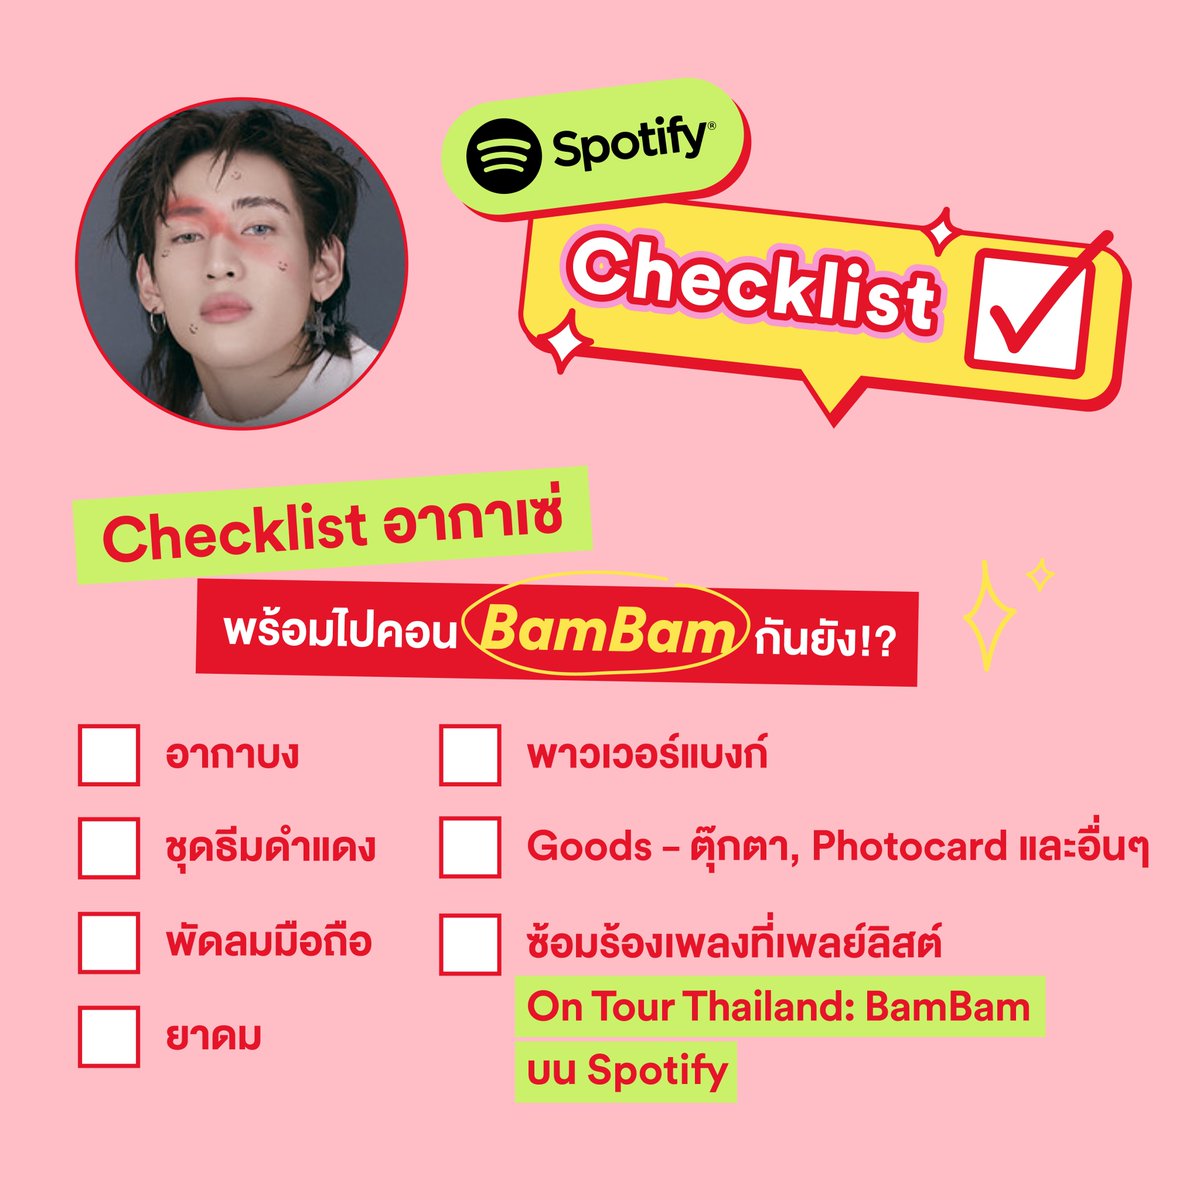 ไหน เหล่าอากาเซ่ มาเช็กความพร้อมก่อนไปเจอตะหนู @BamBam1A วันนี้กันหน่อย 😉🐍 เช็กลิสต์ให้ครบแล้วไปจบที่ซ้อมเพลย์ลิสต์ On Tour Thailand: BamBam ด่วนๆ open.spotify.com/playlist/37i9d… #แบมแบม #BAMBAM #뱀뱀